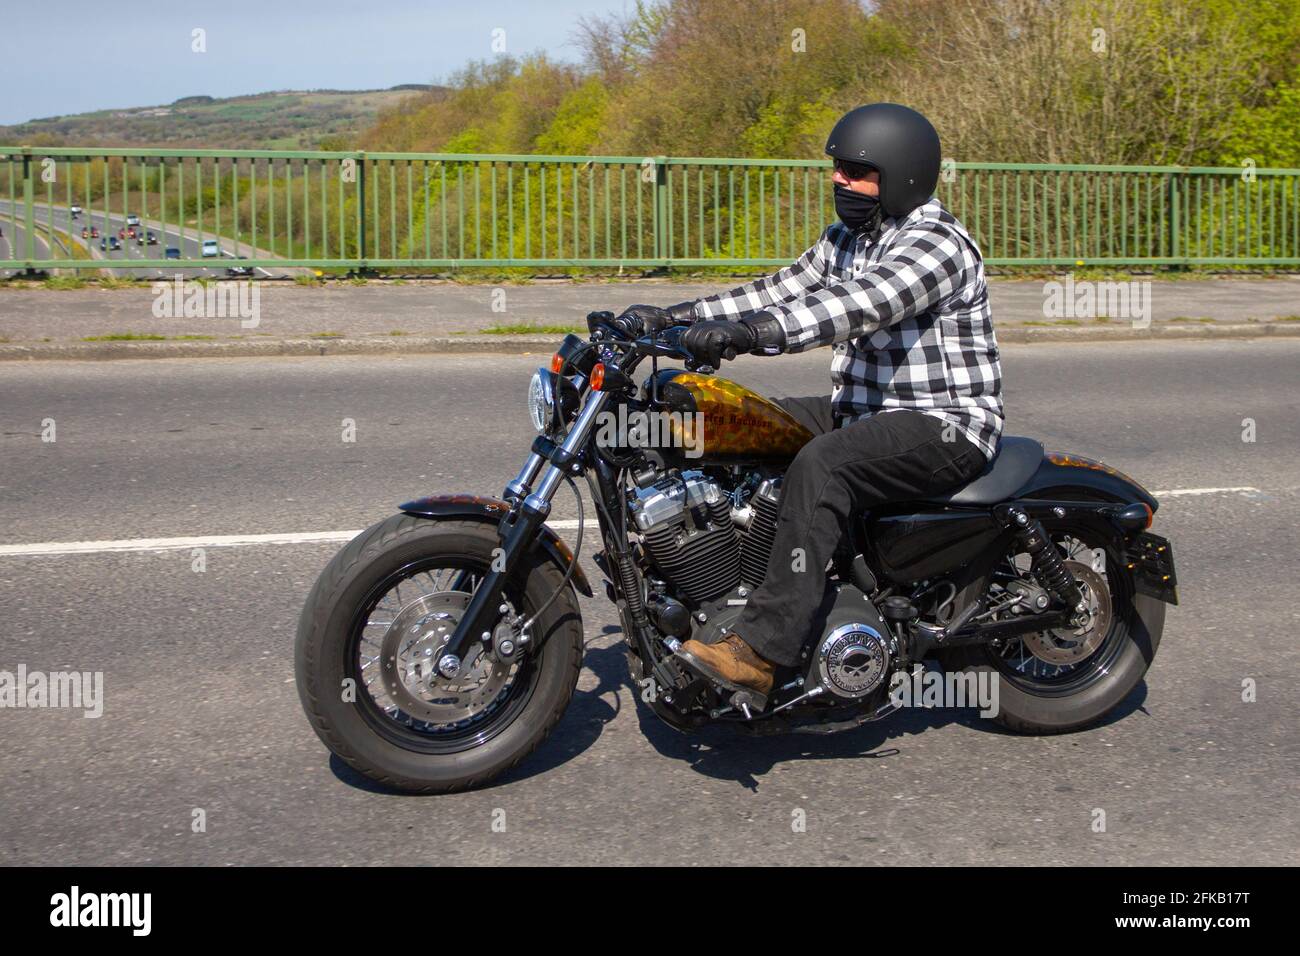 2011 Harley Davidson XL 1200x Cuarenta y ocho; ciclista de motocicleta; transporte de dos ruedas, motocicletas, vehículos, Carreteras, motos, motos motoristas en Chorley, Reino Unido Foto de stock